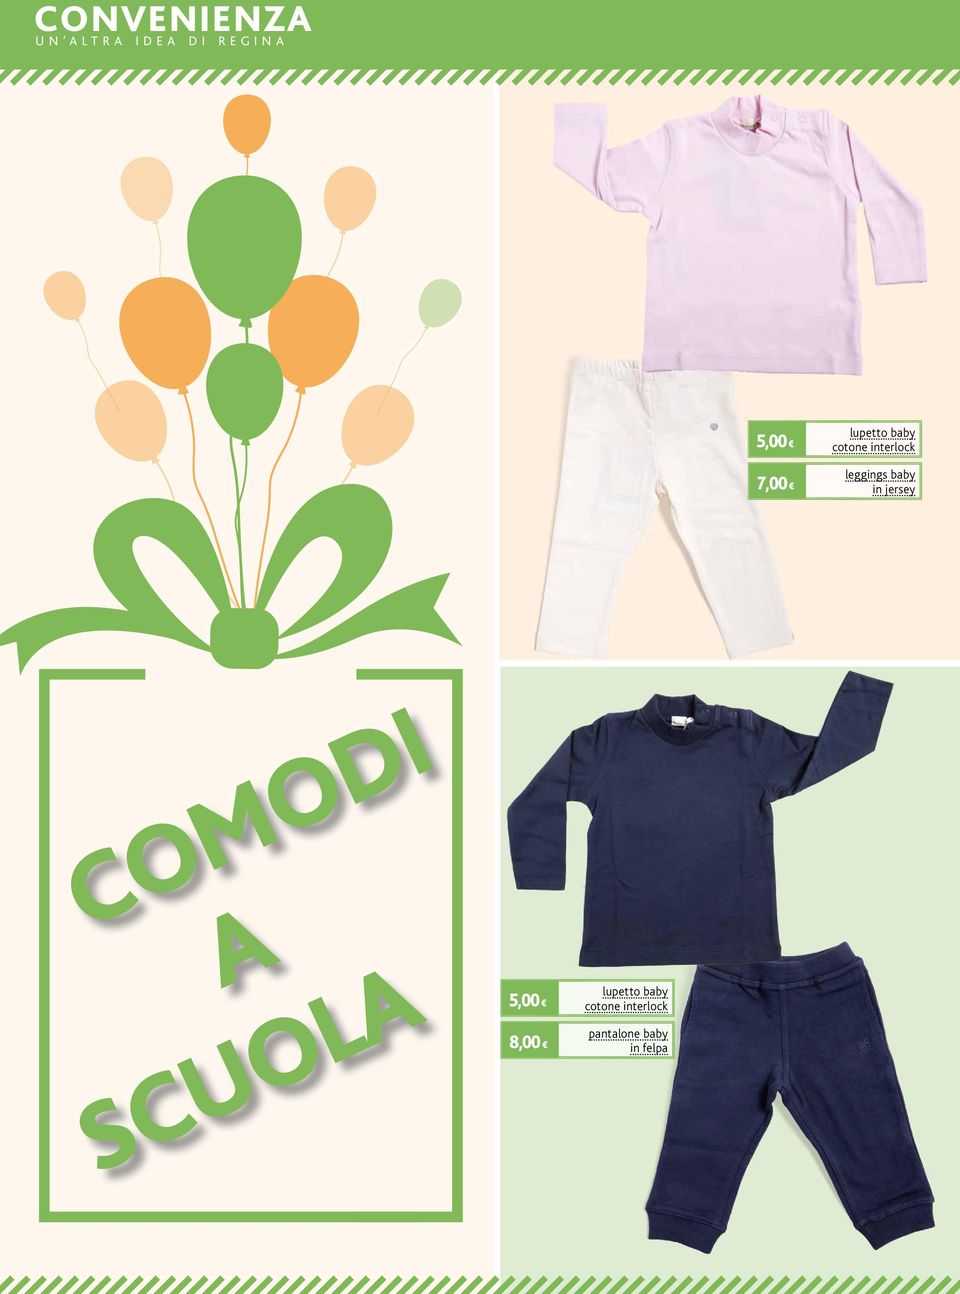 leggings baby in jersey COMODI A SCUOLA 5,00